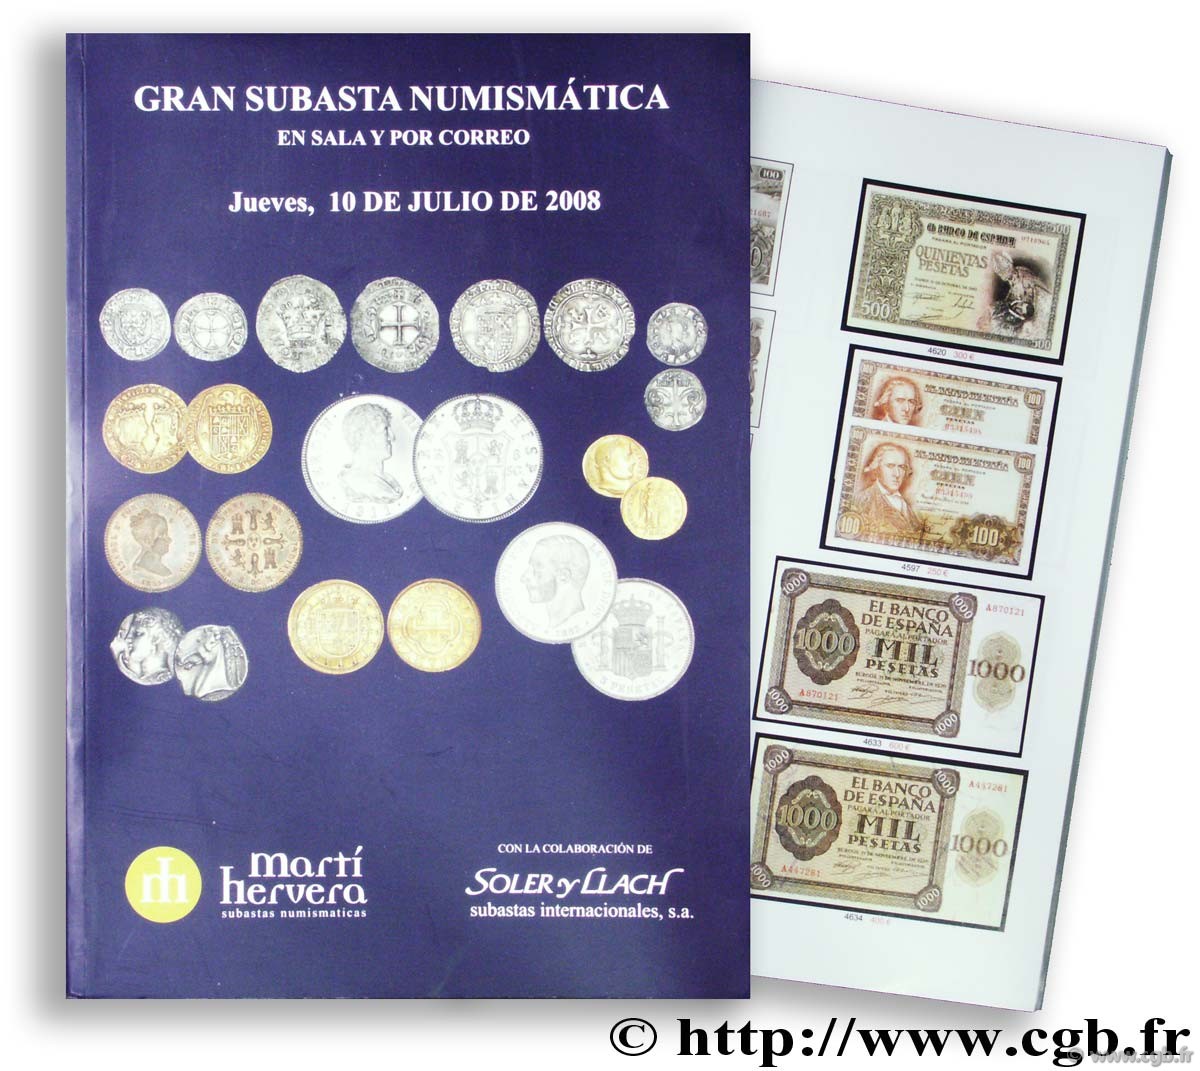 Gran subasta numismática en sala y por correo, 10 de julio de 2008 